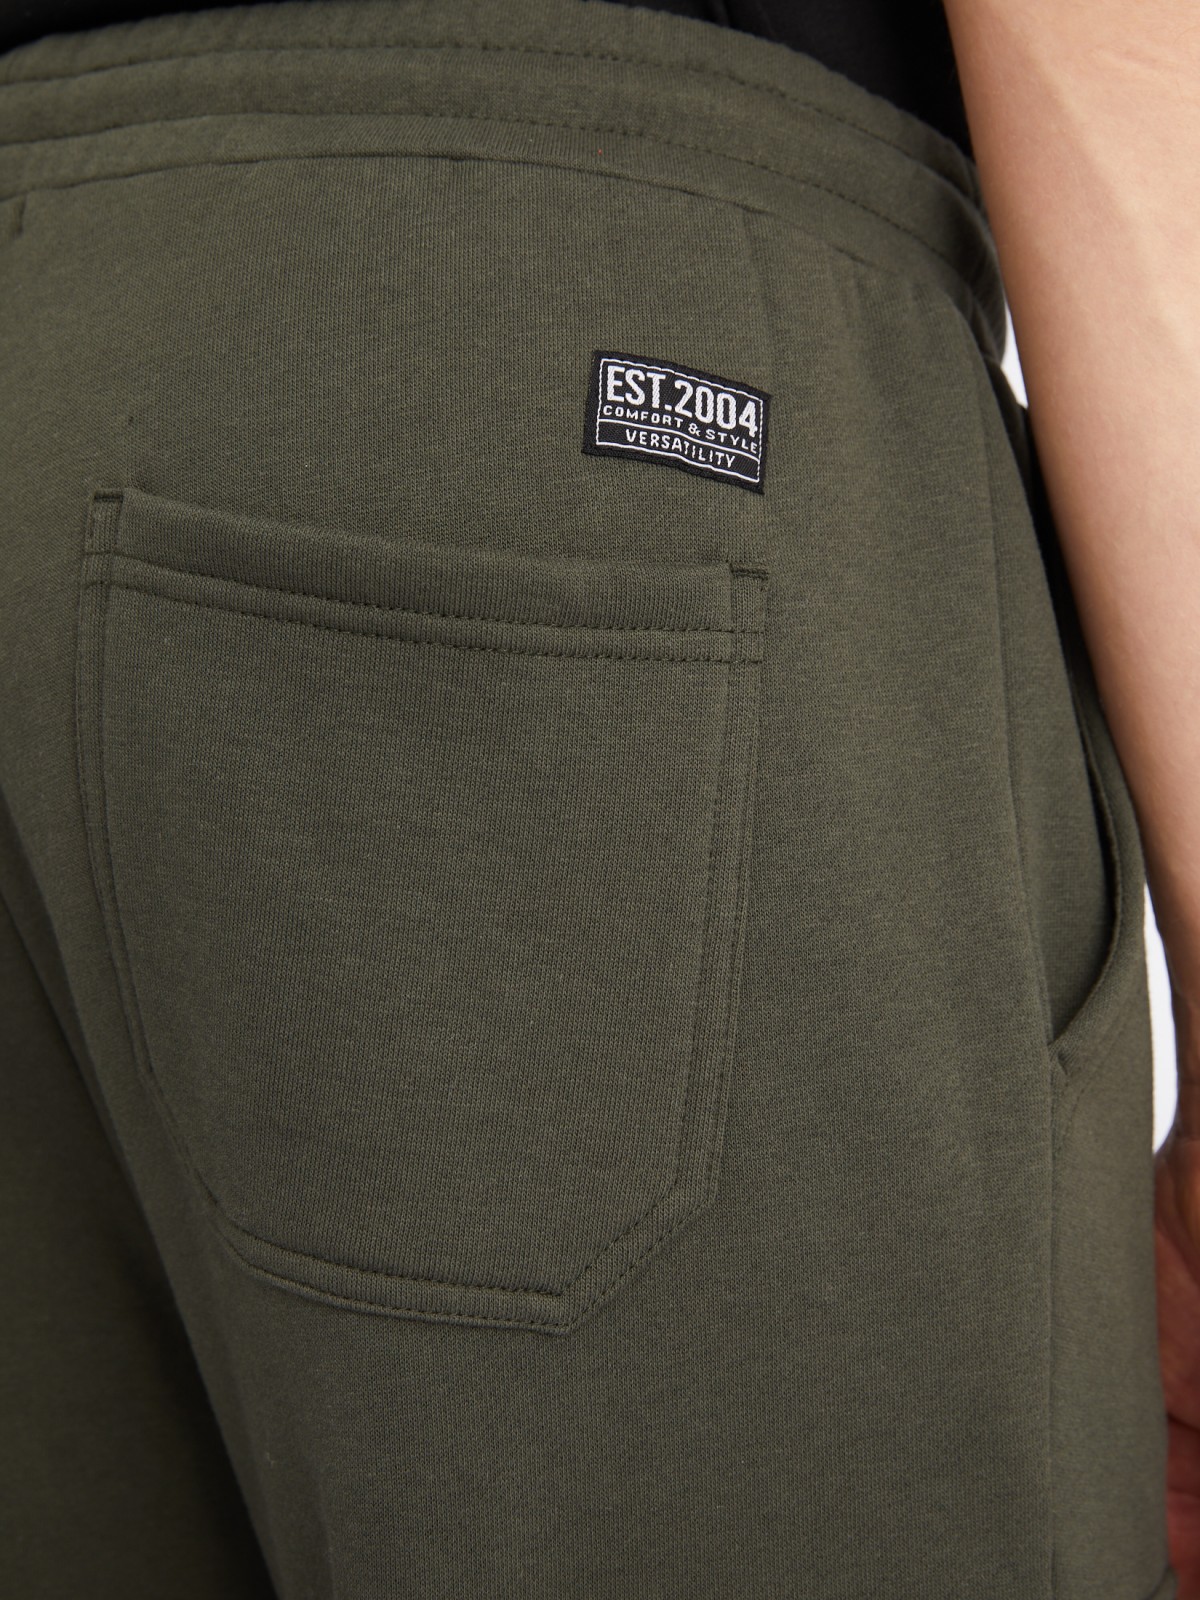 Утеплённые брюки-джоггеры на резинке с карманами карго zolla 213347675043, цвет хаки, размер L - фото 6